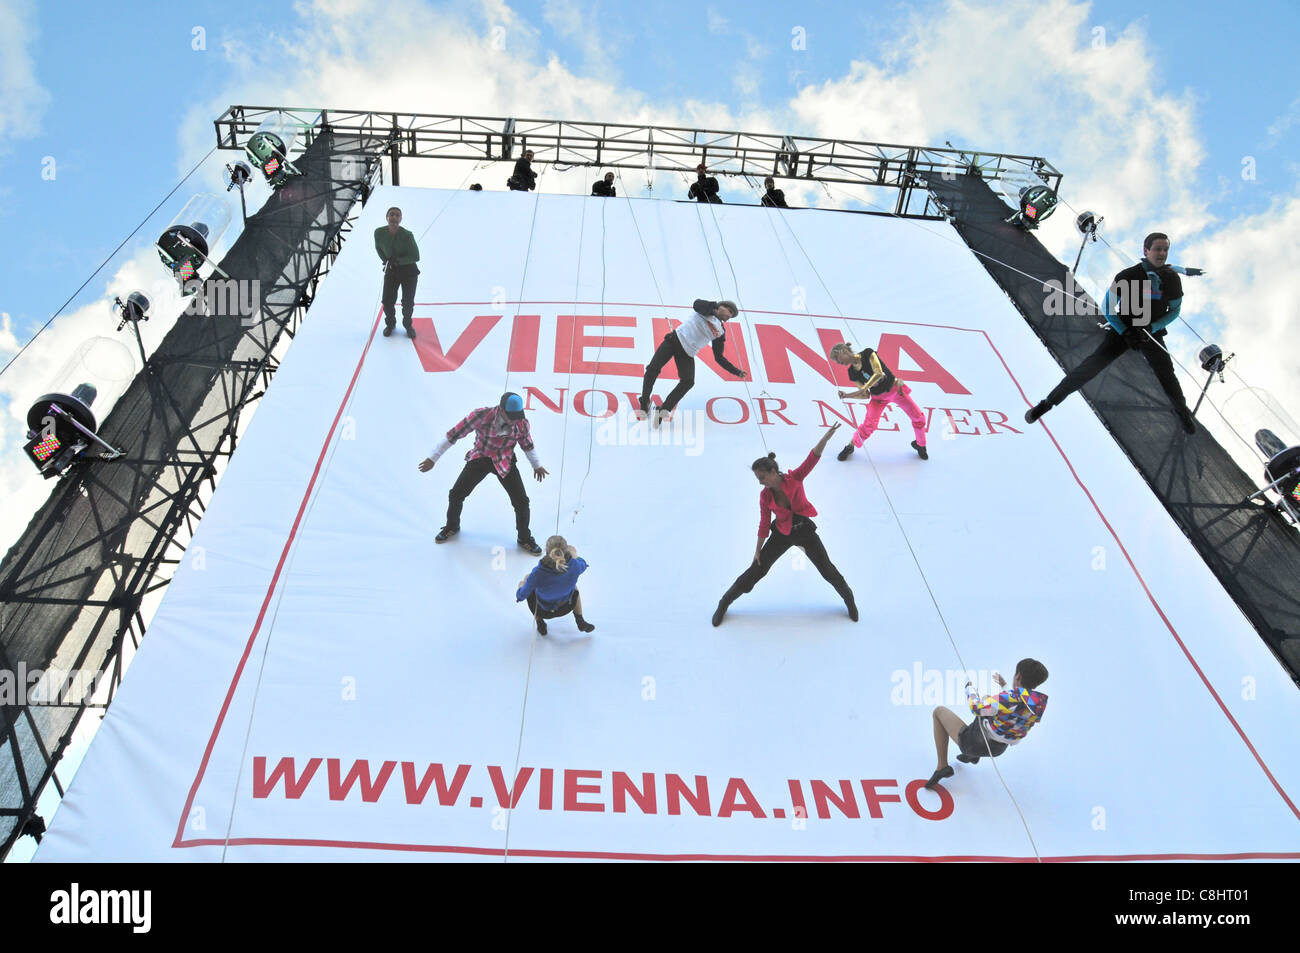 Vienne maintenant ou jamais danseurs ascending une plate-forme érigée en face de Nelsons Column pour promouvoir le tourisme à Vienne Mardi 25 Octobre 2011 Banque D'Images